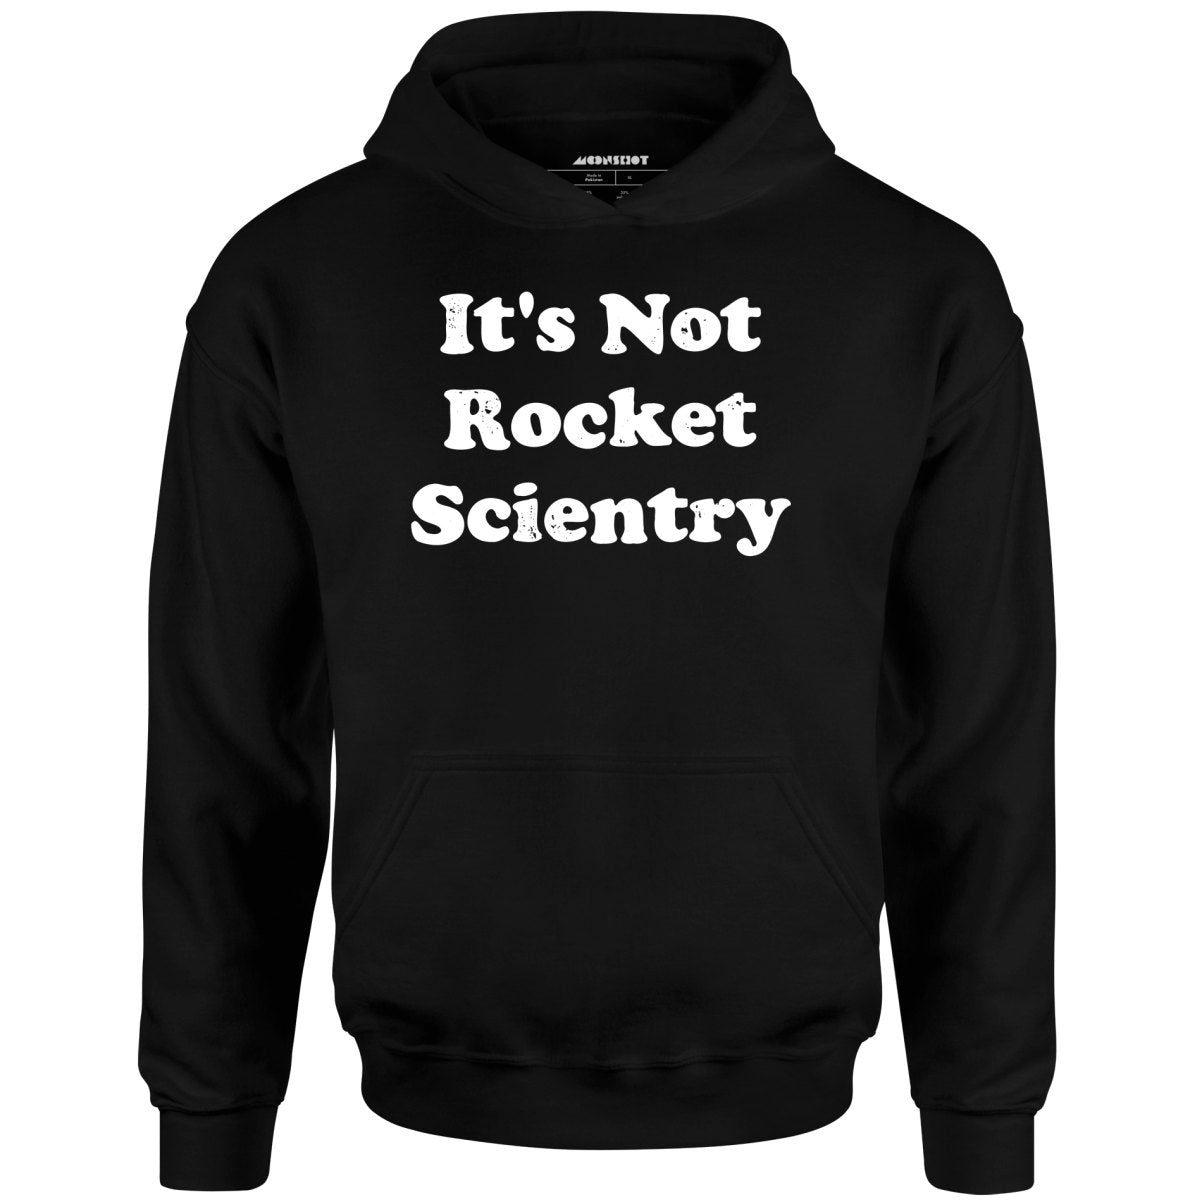 It's Not Rocket Scientry - Unisex Hoodie